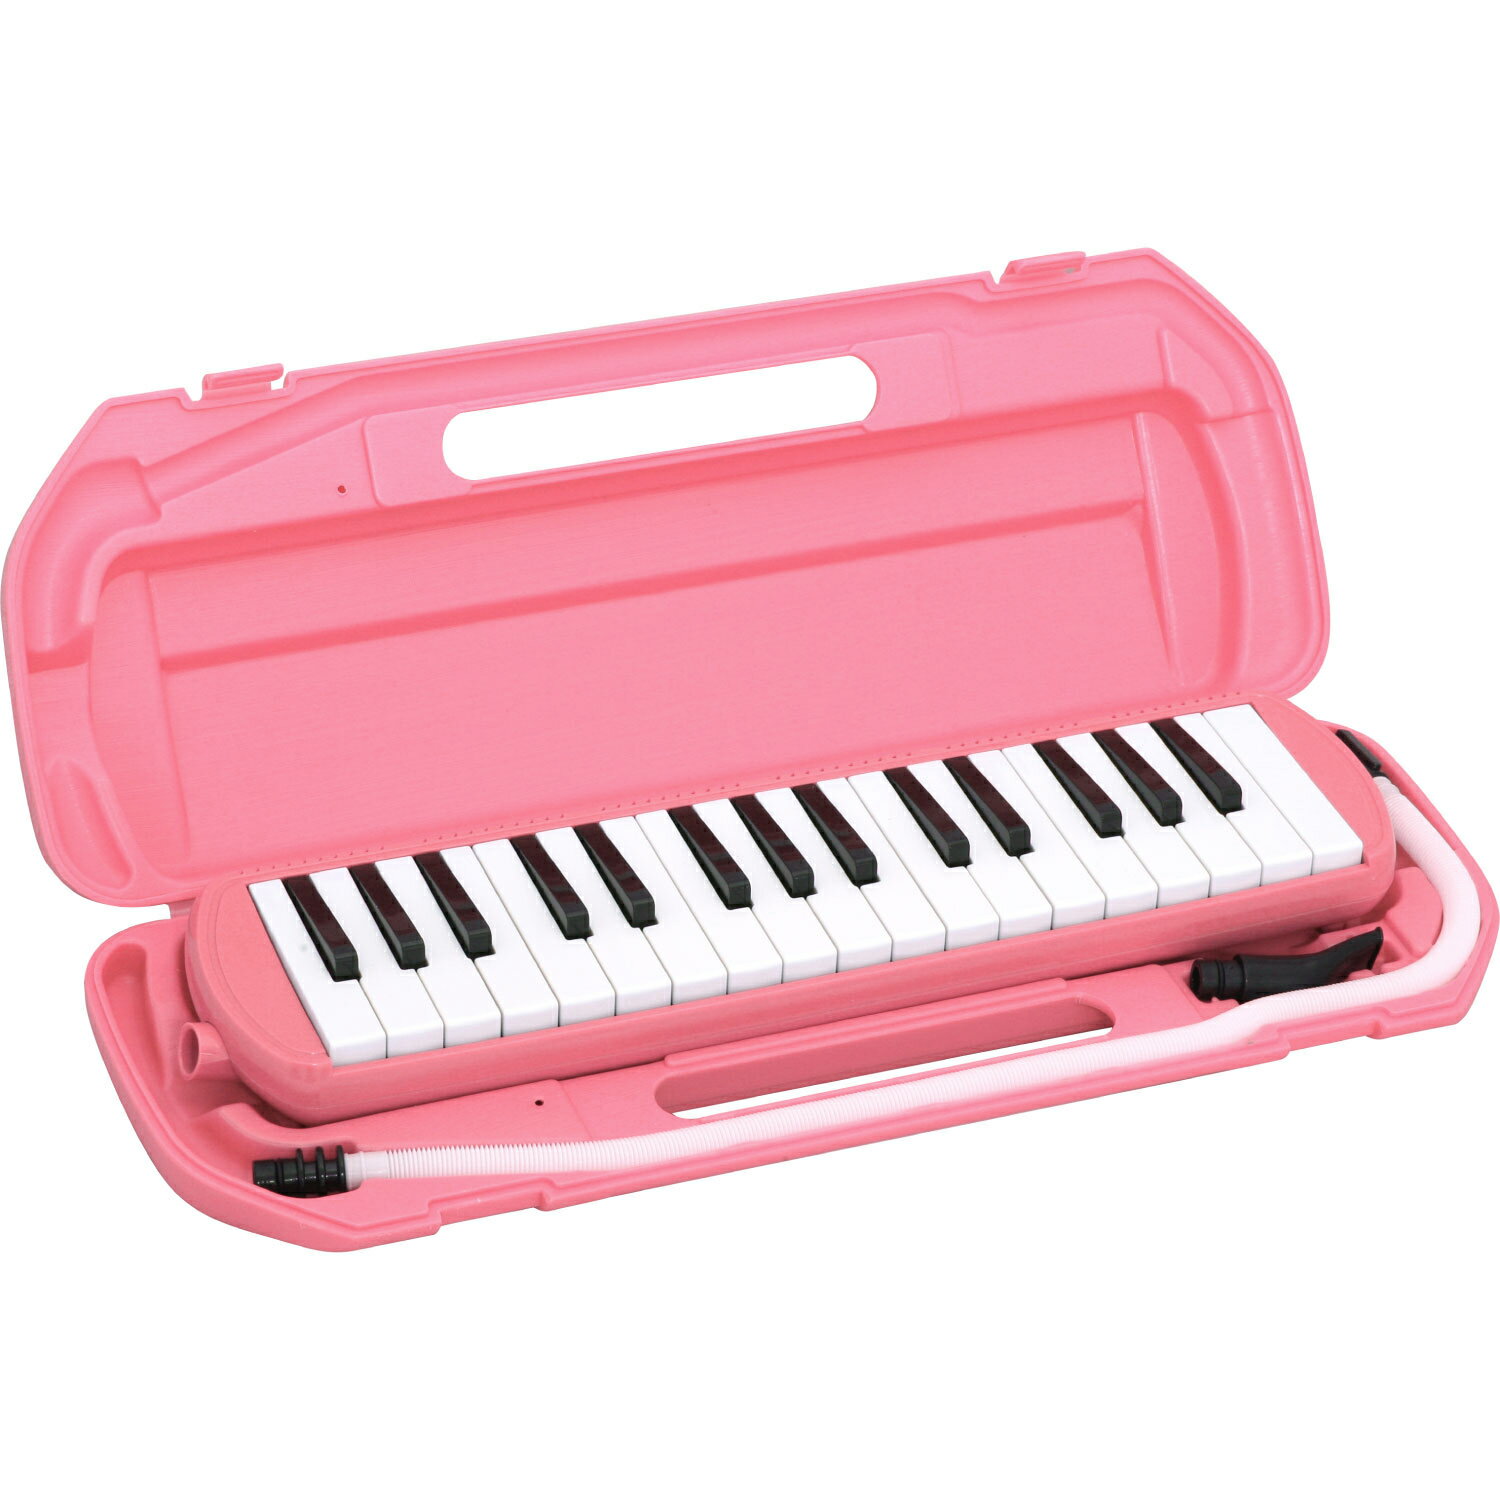 鍵盤ハーモニカ KIKUTANI MM-32 PIK ピンク